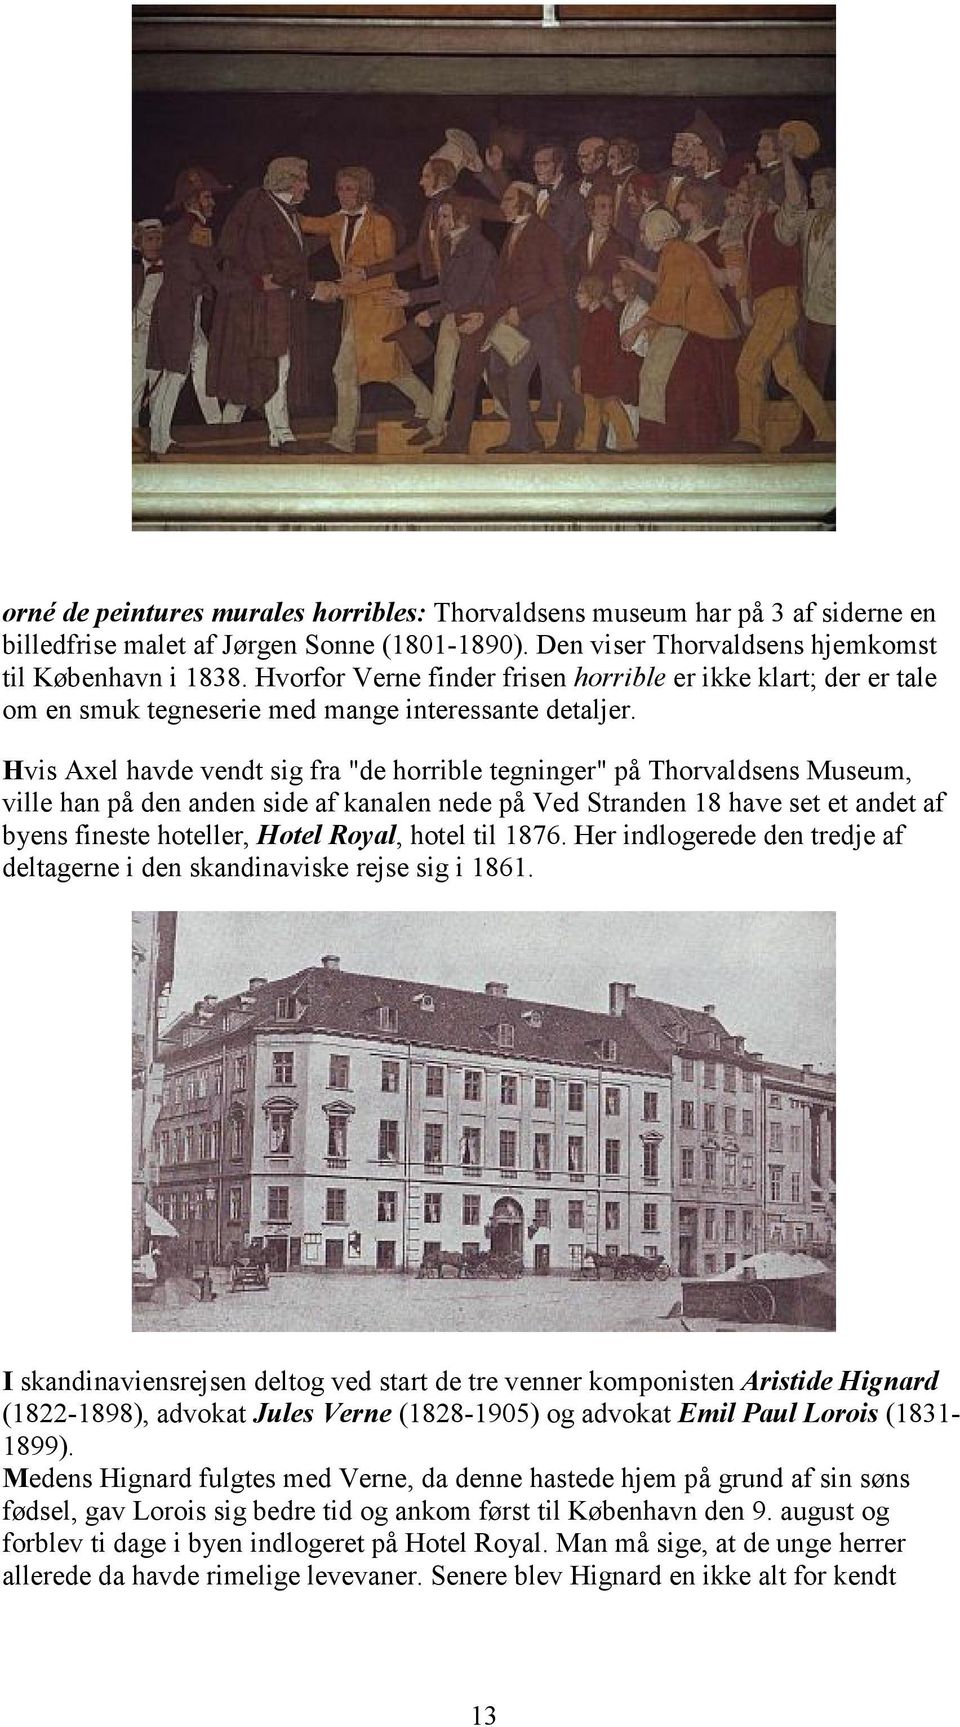 Hvis Axel havde vendt sig fra "de horrible tegninger" på Thorvaldsens Museum, ville han på den anden side af kanalen nede på Ved Stranden 18 have set et andet af byens fineste hoteller, Hotel Royal,